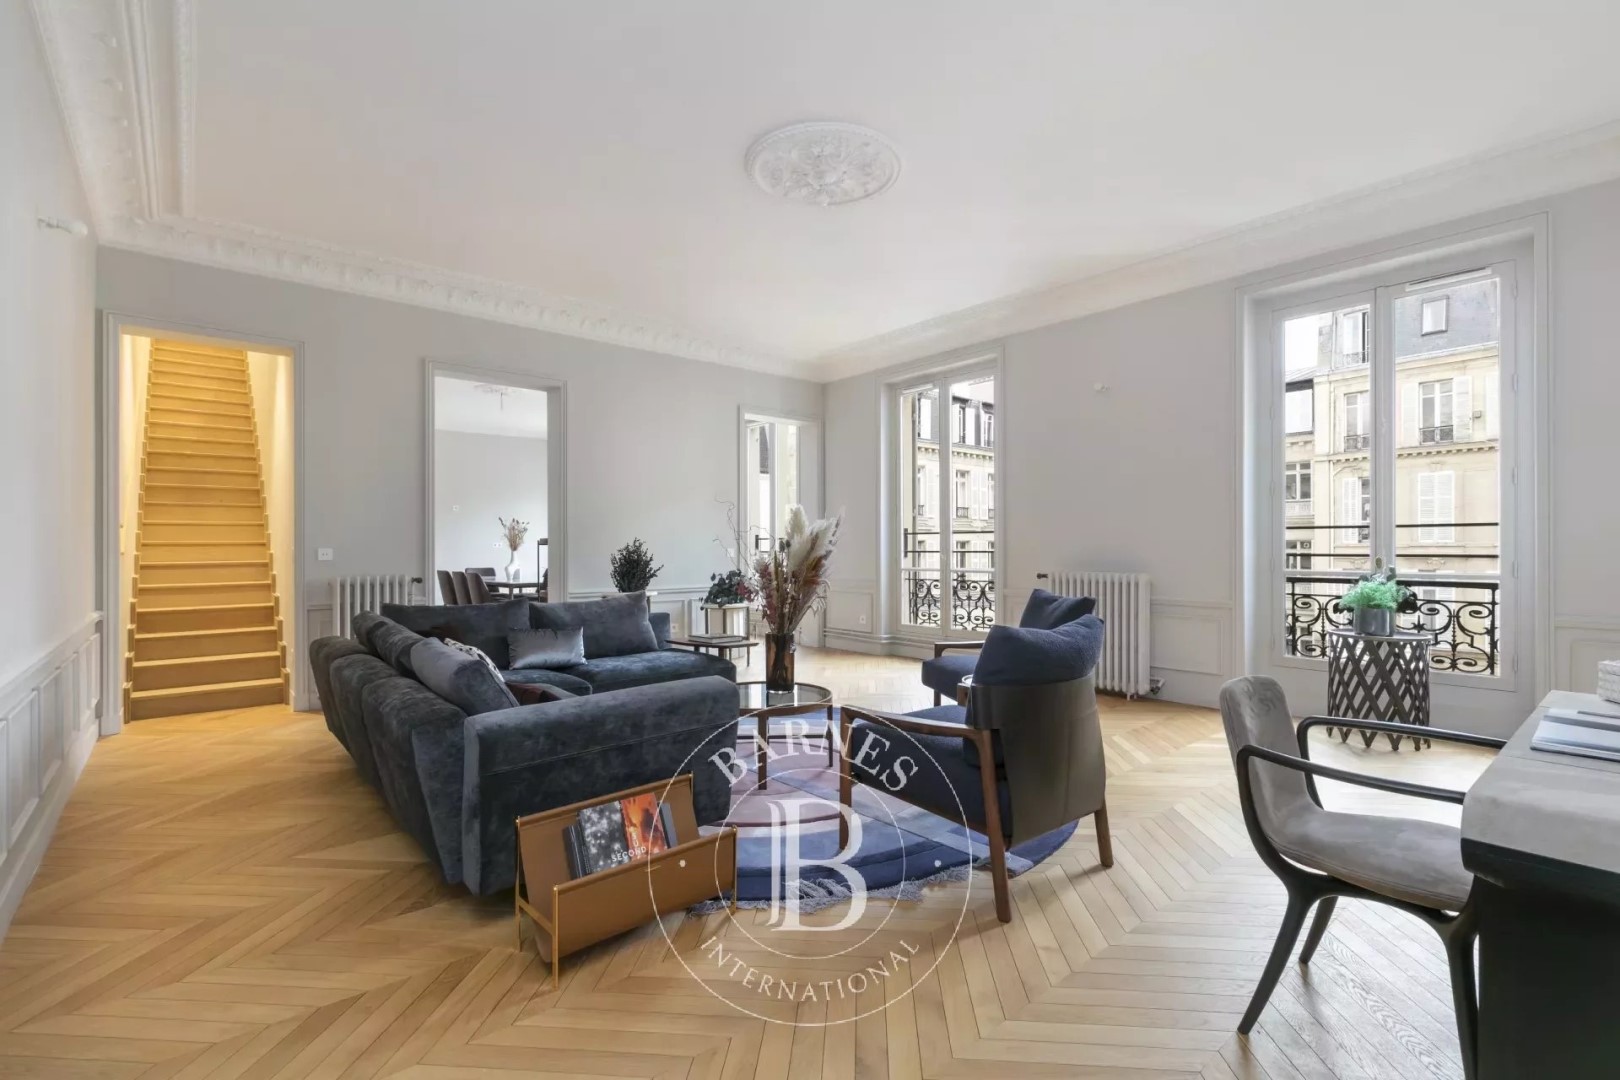 1 bedroom luxury Apartment for sale in 12 avenue Montaigne - 75008 Paris,  Paris, Île-de-France - 65097803 